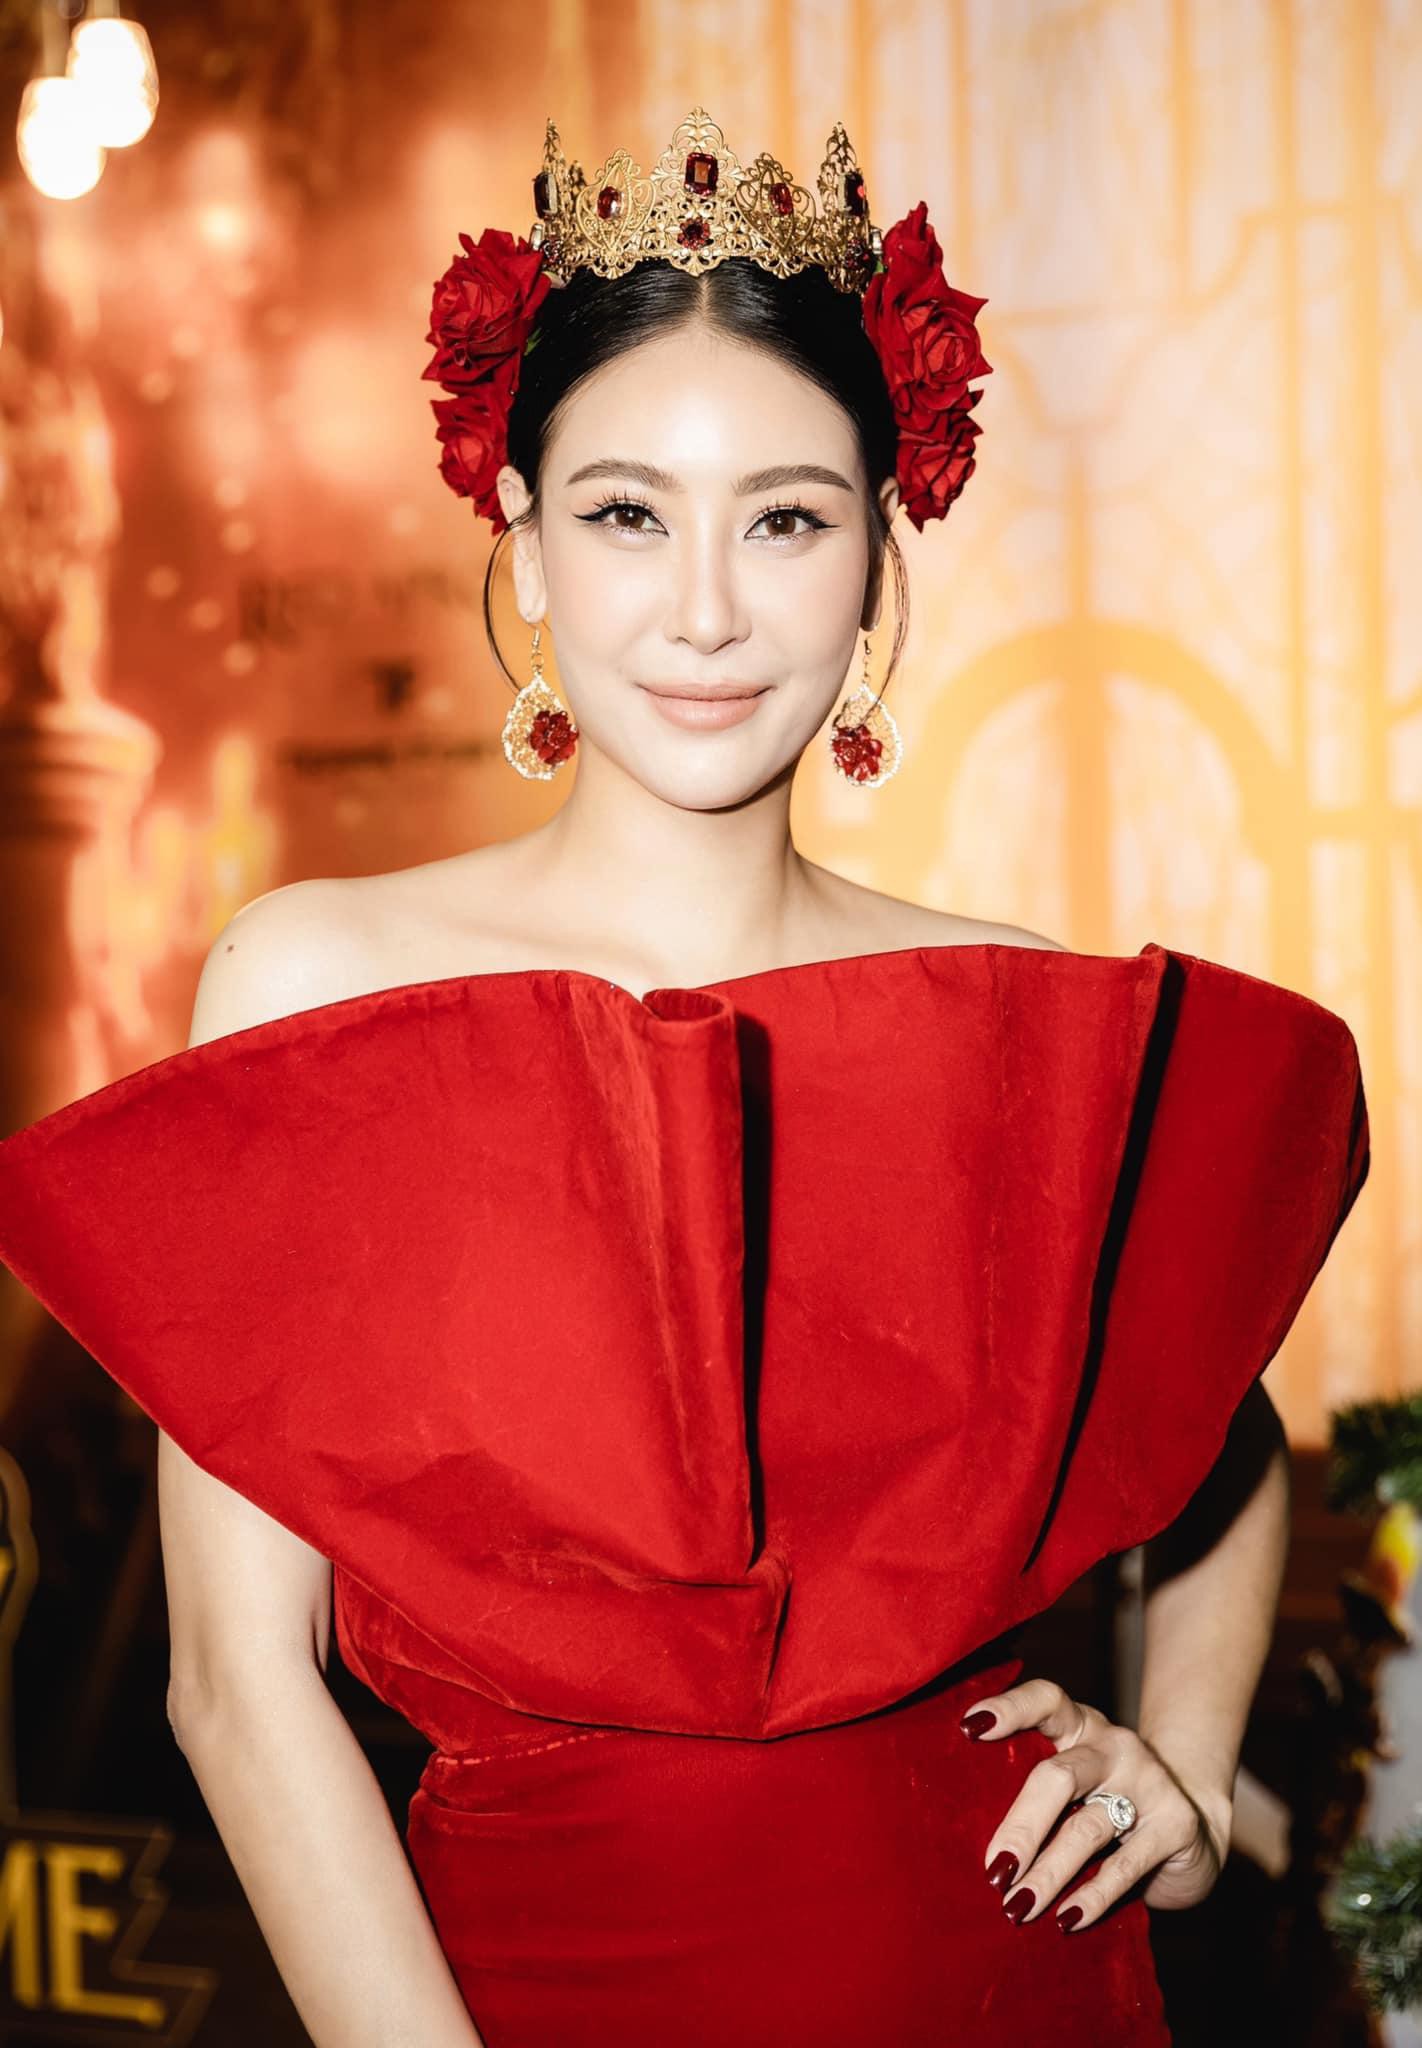 Hoa hậu Hà Kiều Anh ở tuổi 45: Từ nhan sắc đến vóc dáng 'đỉnh cao' khiến đàn em ngưỡng mộ - Ảnh 13.